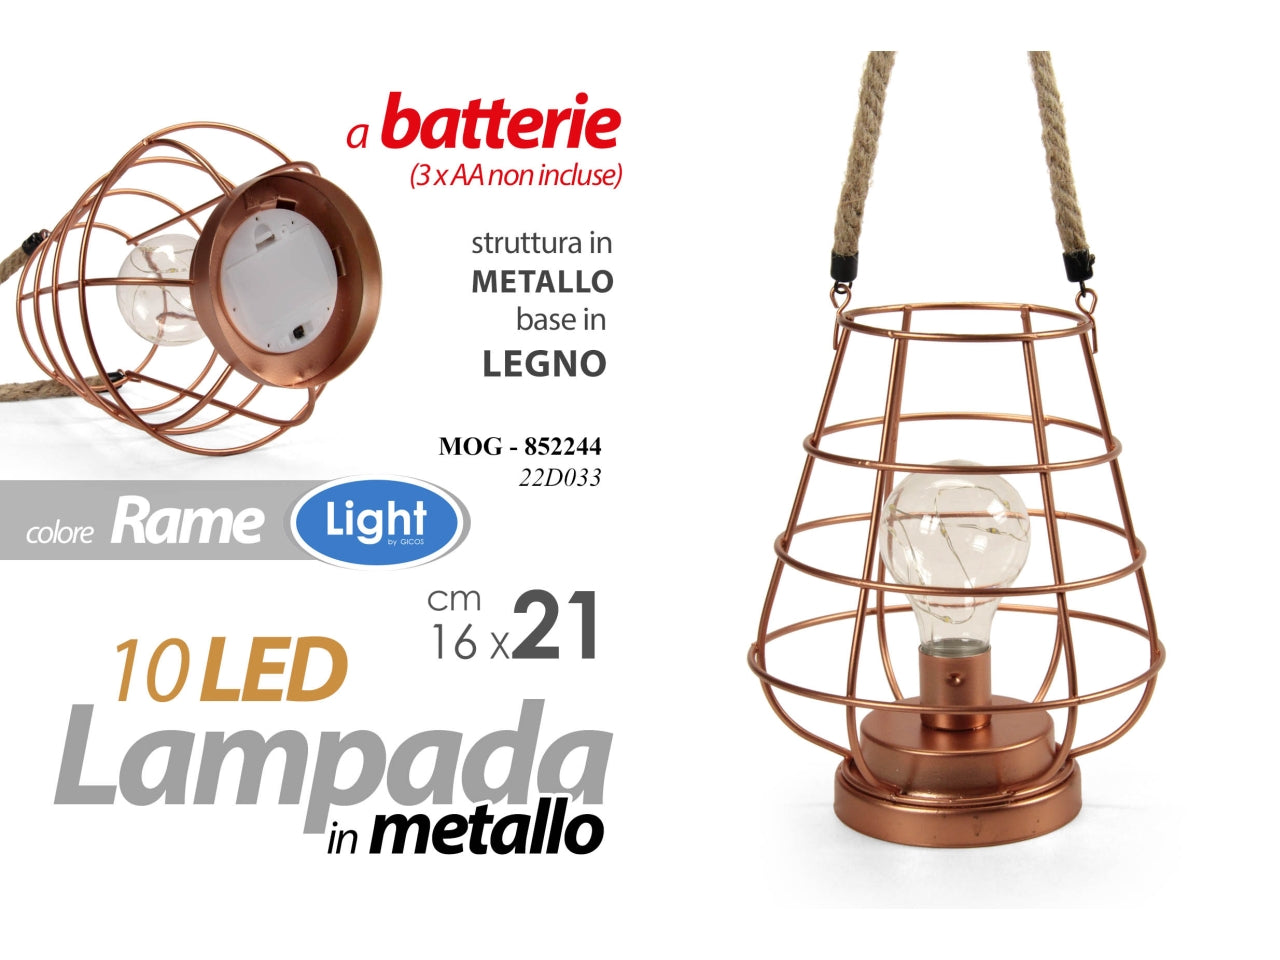 Lampada in metallo color rame e base in legno con 10 led misura 16x16x21cm - funzionamento a batterie (3x aa non incluse)